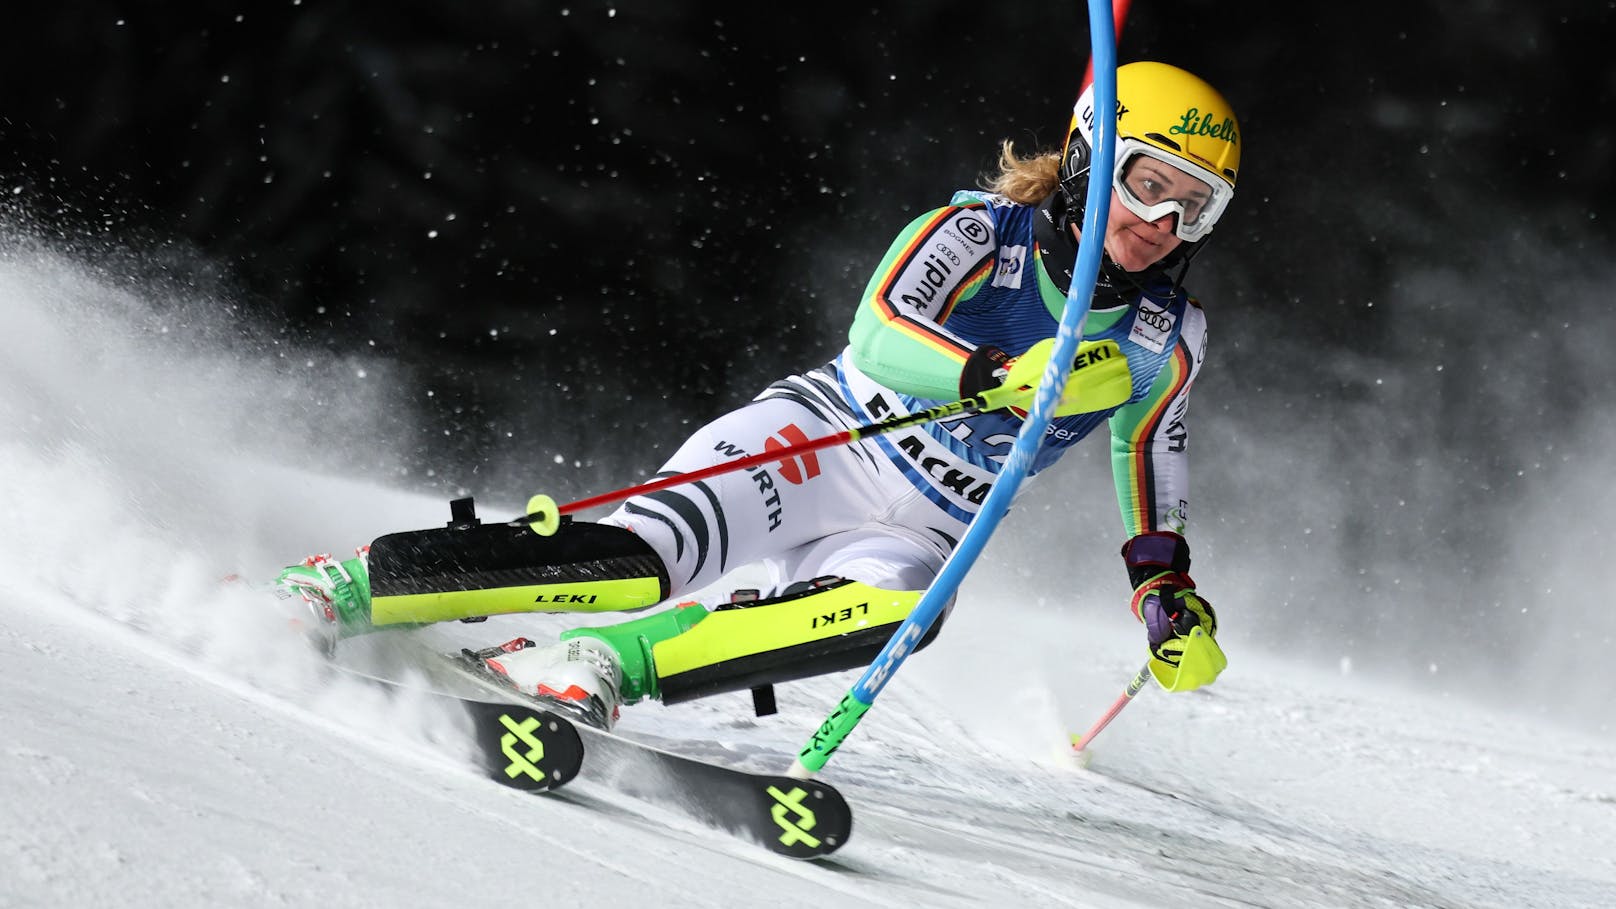 WM-Bronze-Gewinnerin beendet ihre Ski-Karriere